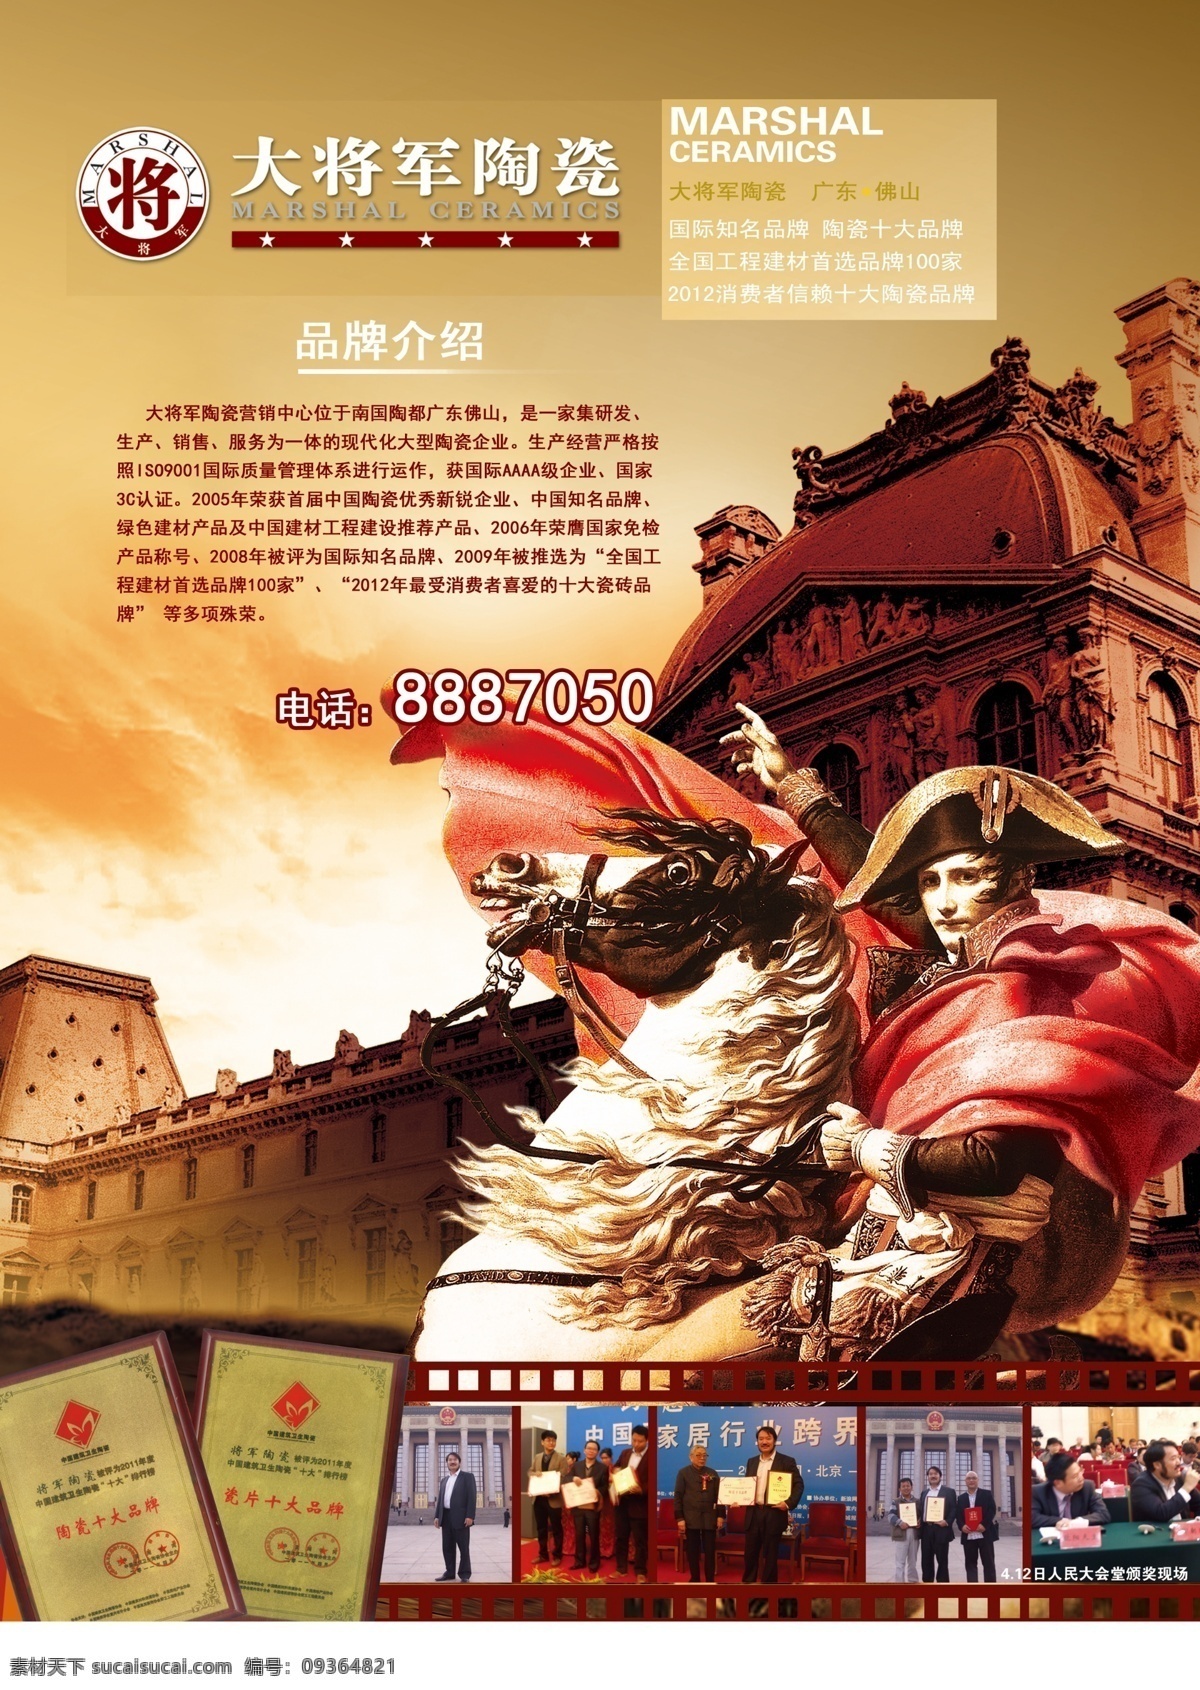 大将军 陶瓷 形象宣传 广告 欧式 拿破仑 城堡 形象 海报 商业广告 分层